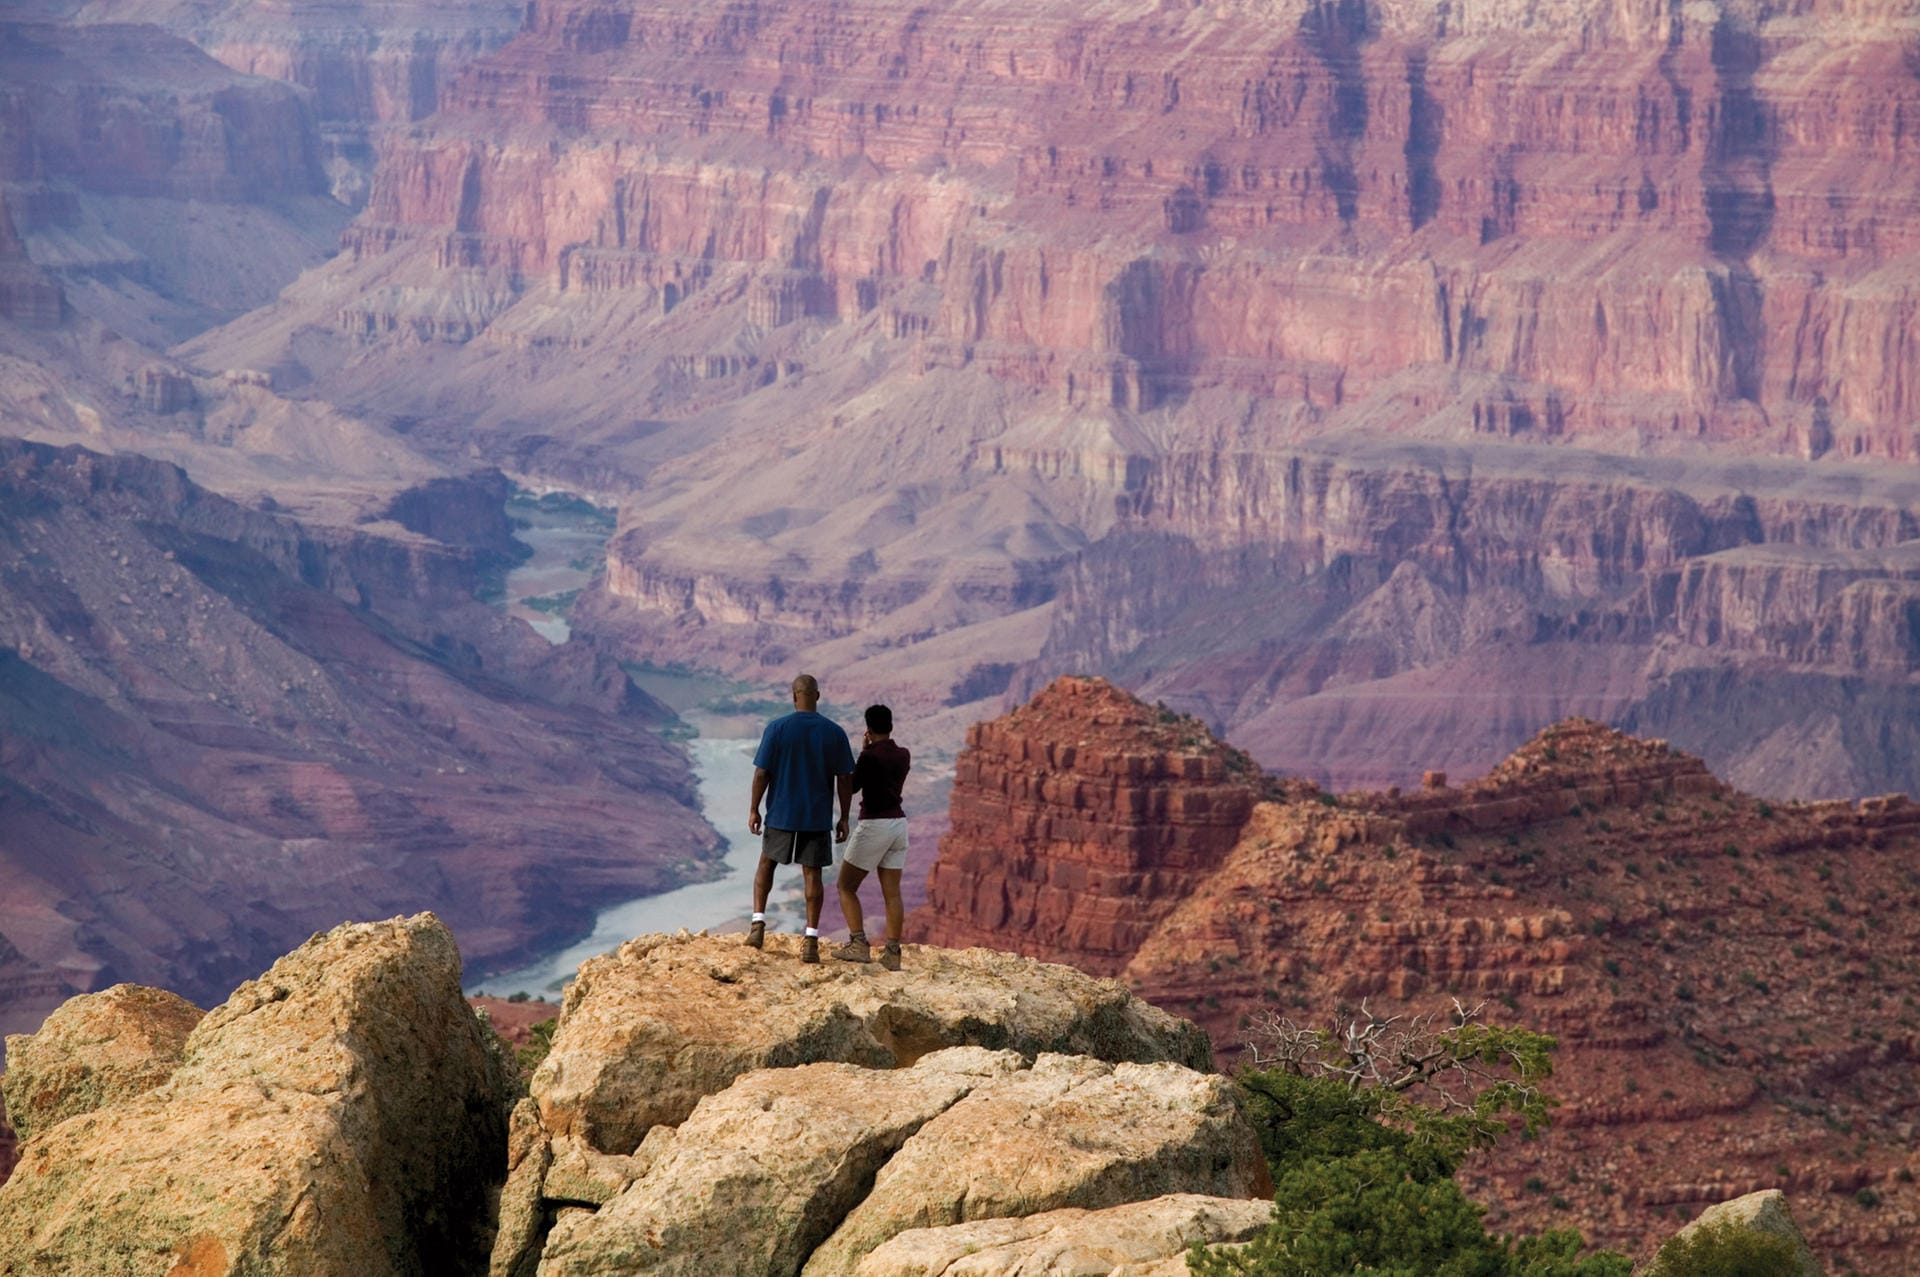 Aussichtspunkt am Grand Canyon: Wer die Schlucht mit allen Sinnen erleben will, wandert durch den Grand Canyon.